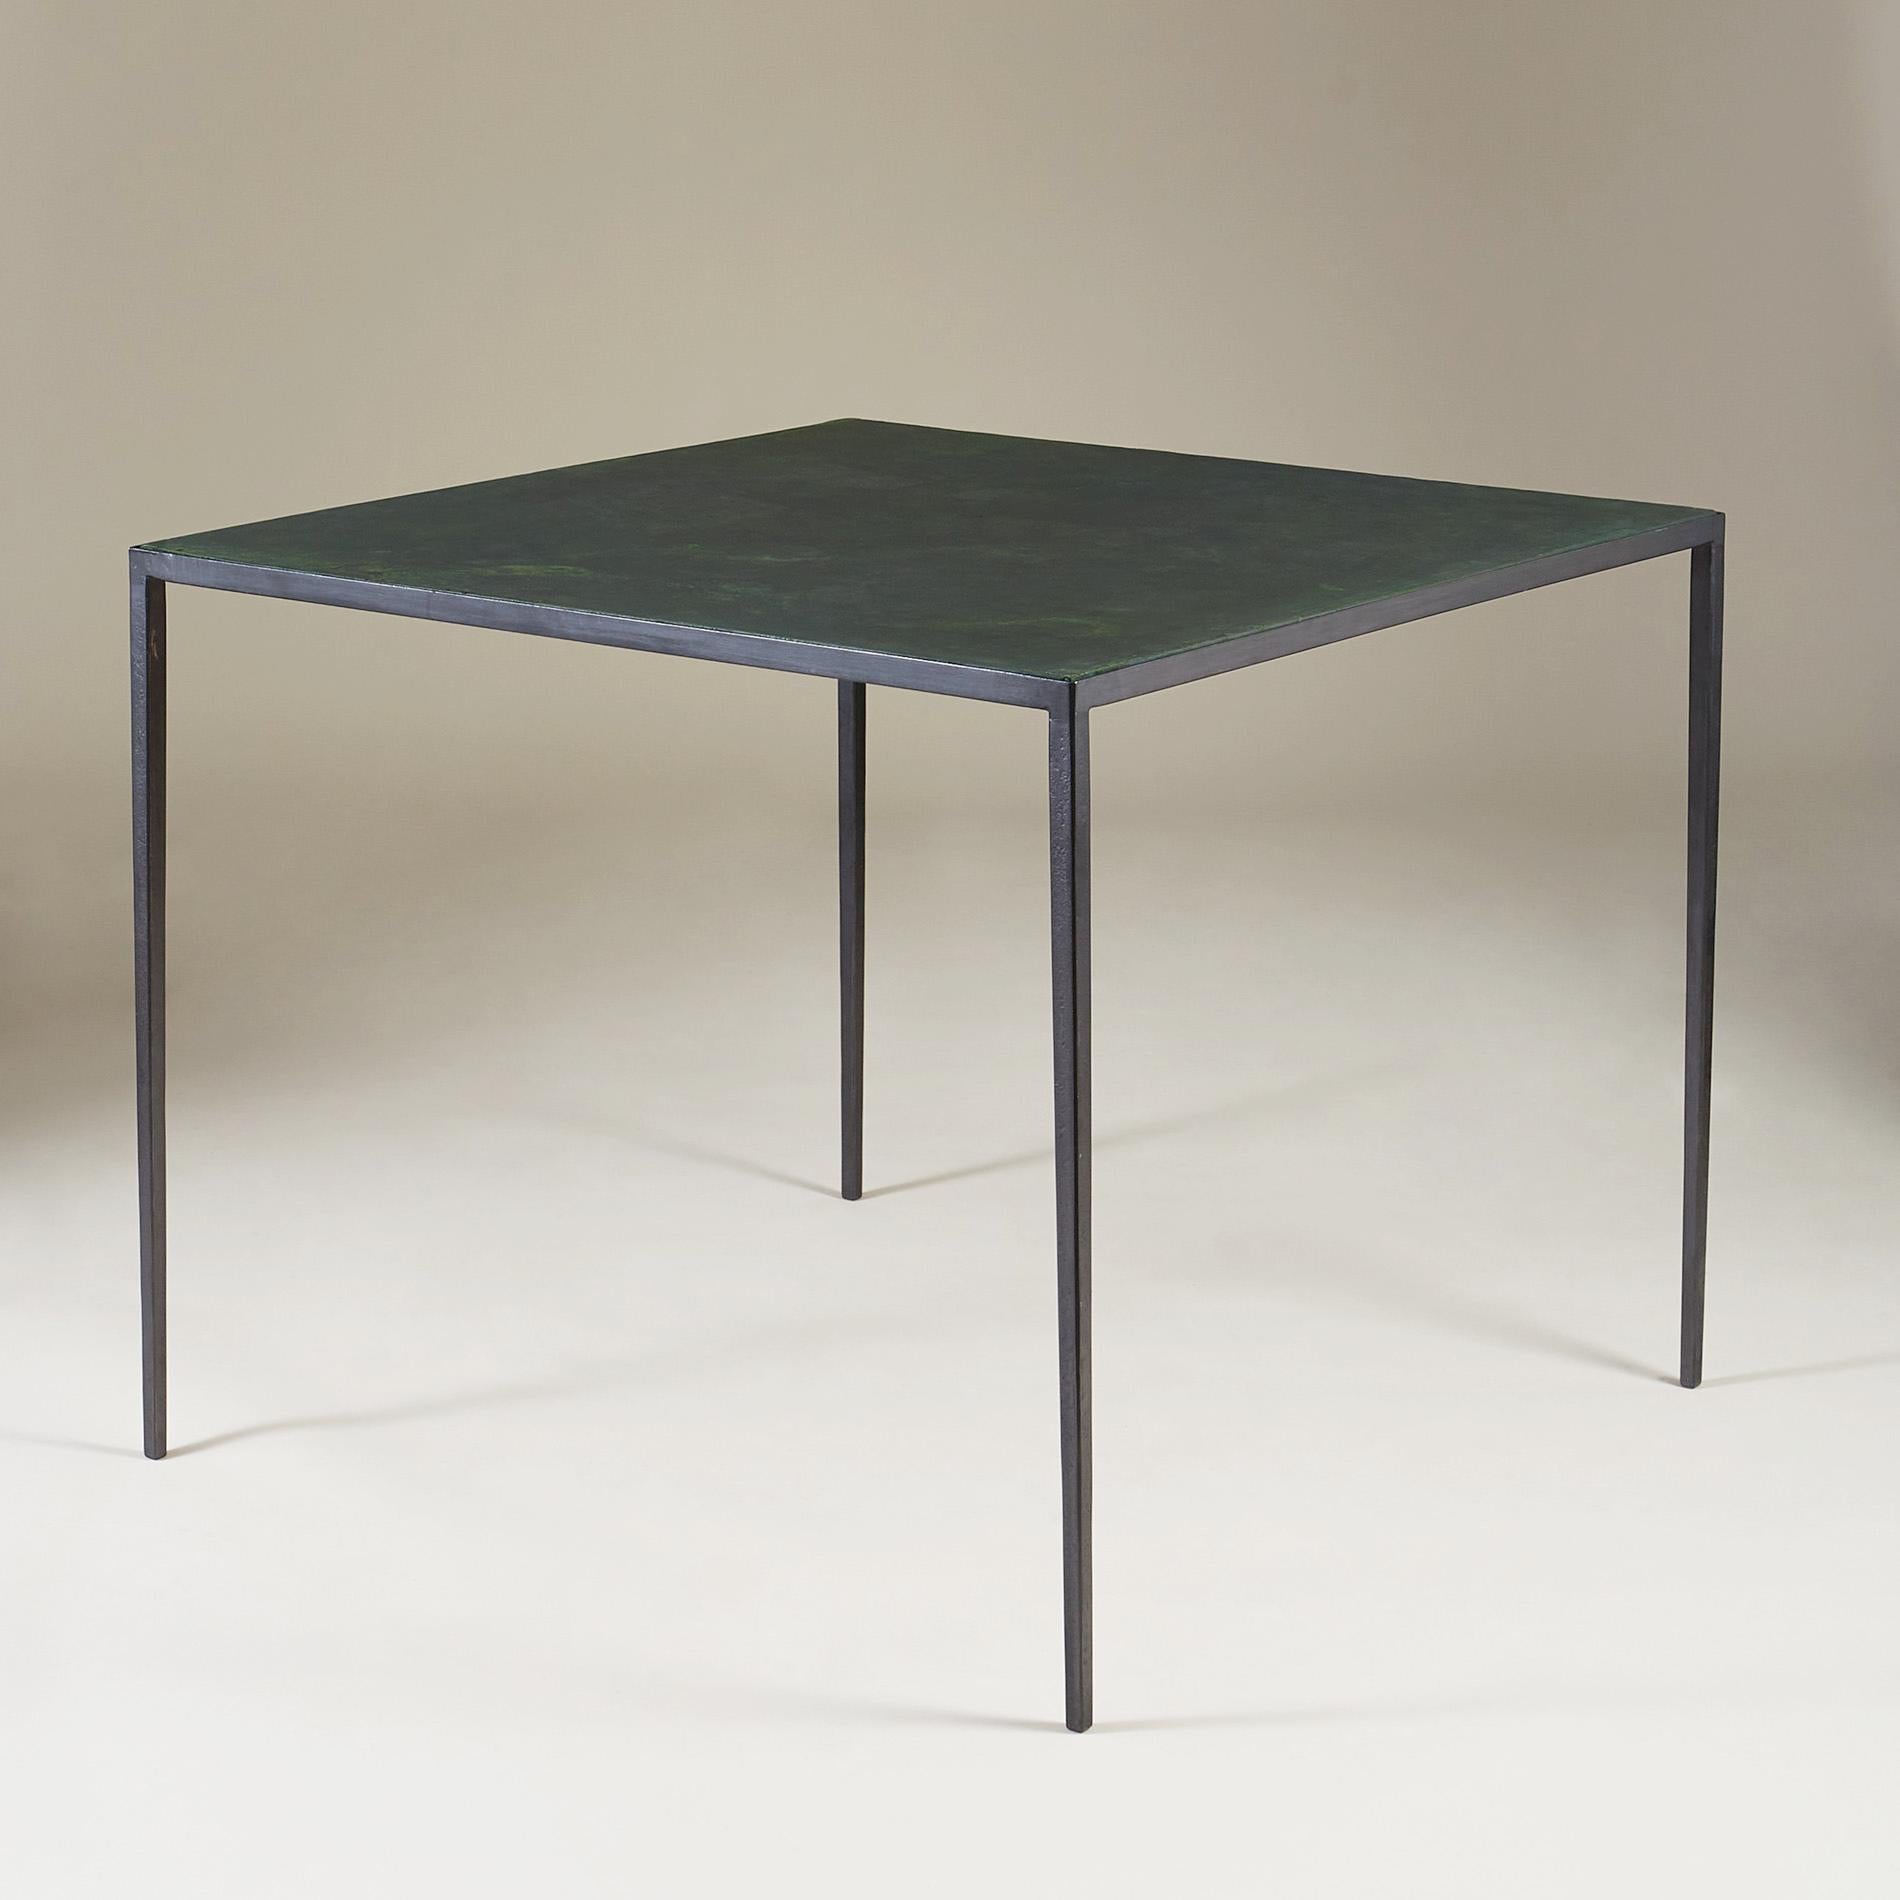 Ein Spieltisch von außergewöhnlicher Qualität, der genau die Beherrschung der perfekt ausbalancierten, minimalistischen Linien des Designers demonstriert. Ein perfektes Beispiel dafür, warum Jean-Michel Frank international als der Meister des